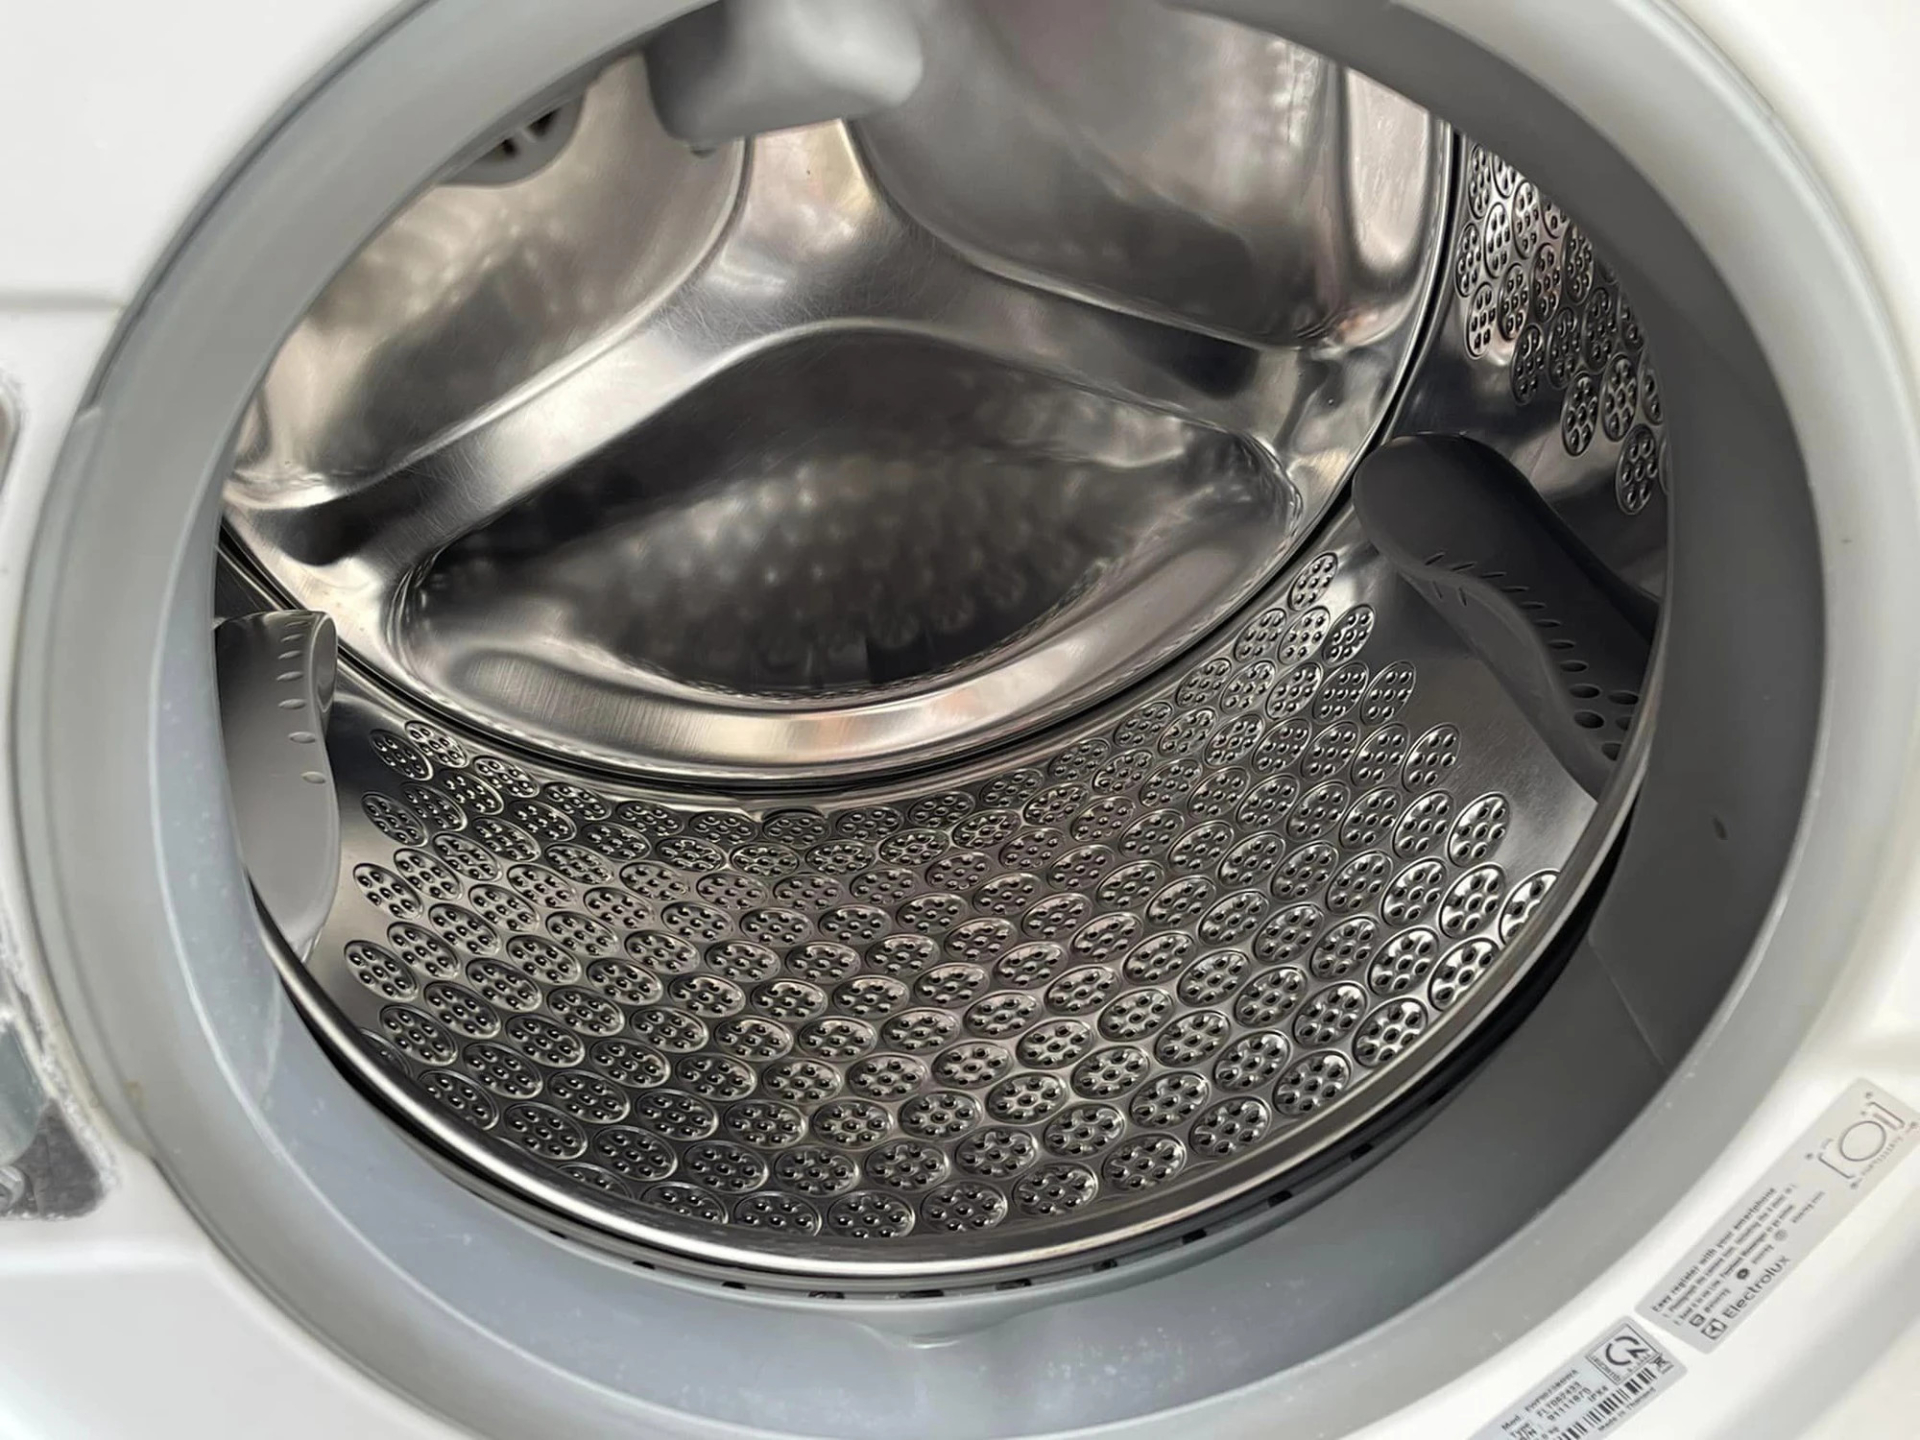 Nhiều người phải bất ngờ trước mẹo chị Thúy chia sẻ, bởi máy giặt sạch bong như mới khiến ai cũng kinh ngạc.